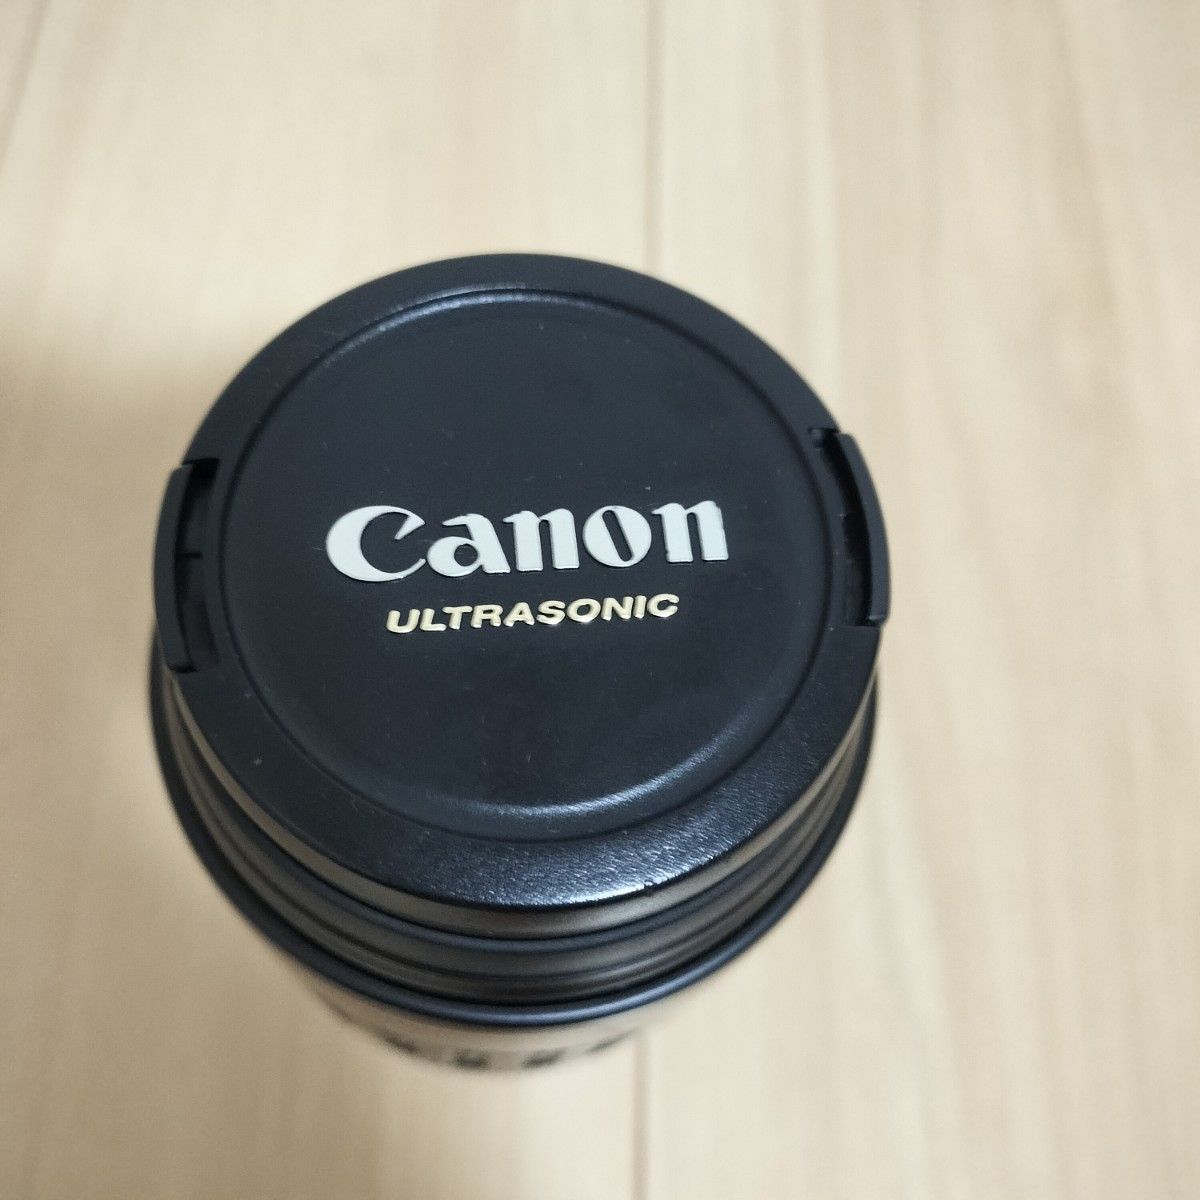 ★幅広い撮影に★Canon キャノン EF 100-300mm 超望遠レンズ